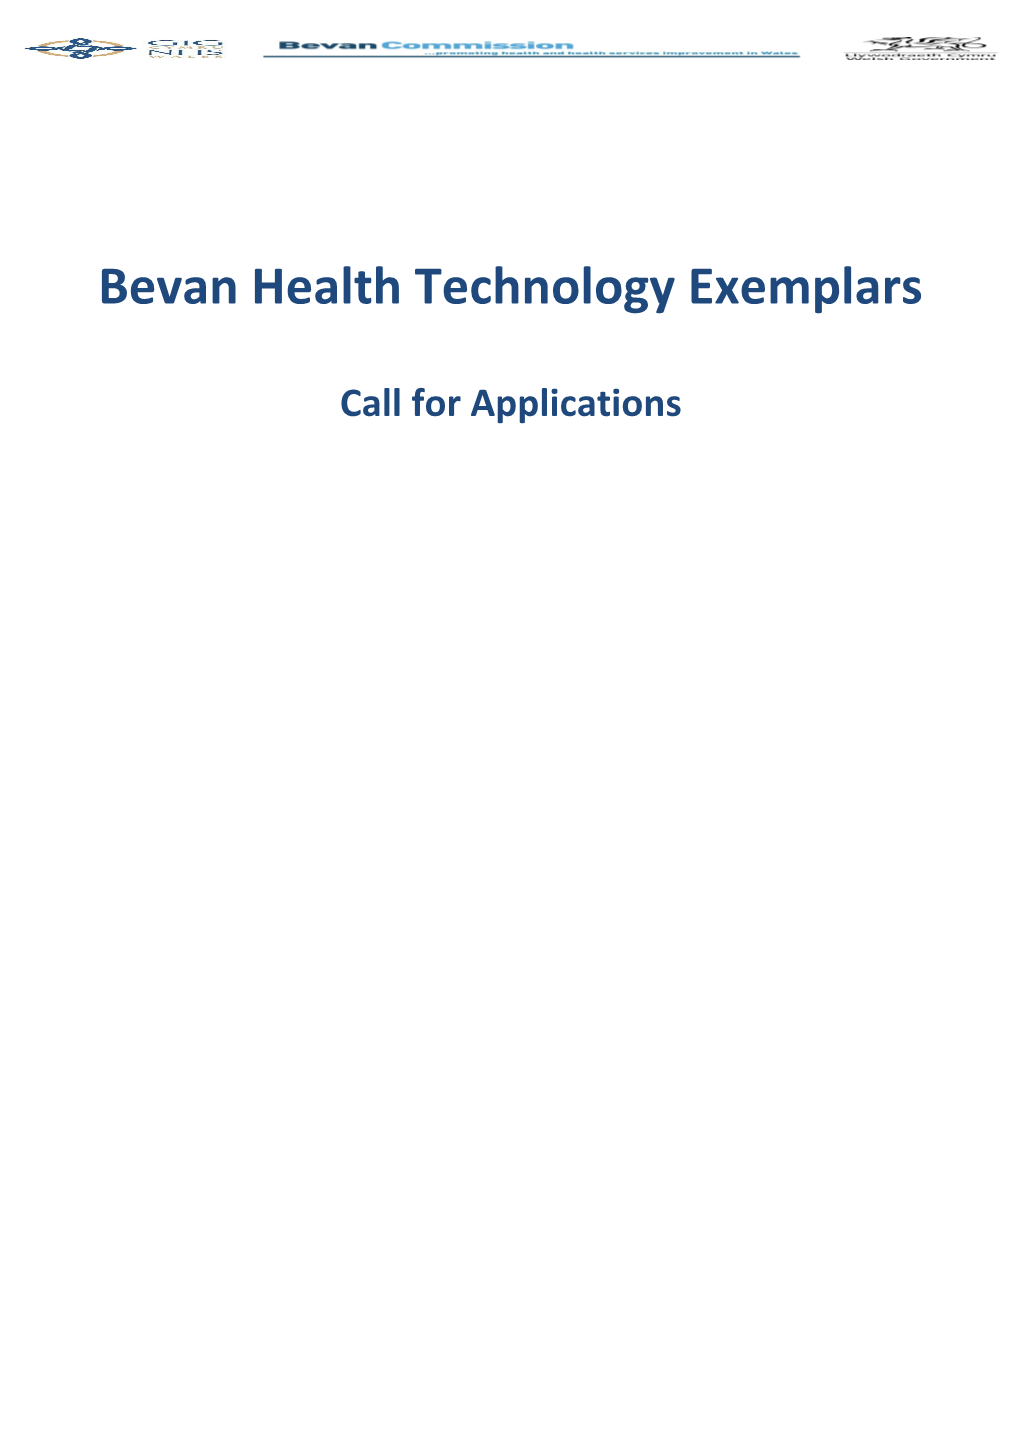 Bevan Health Technology Exemplars